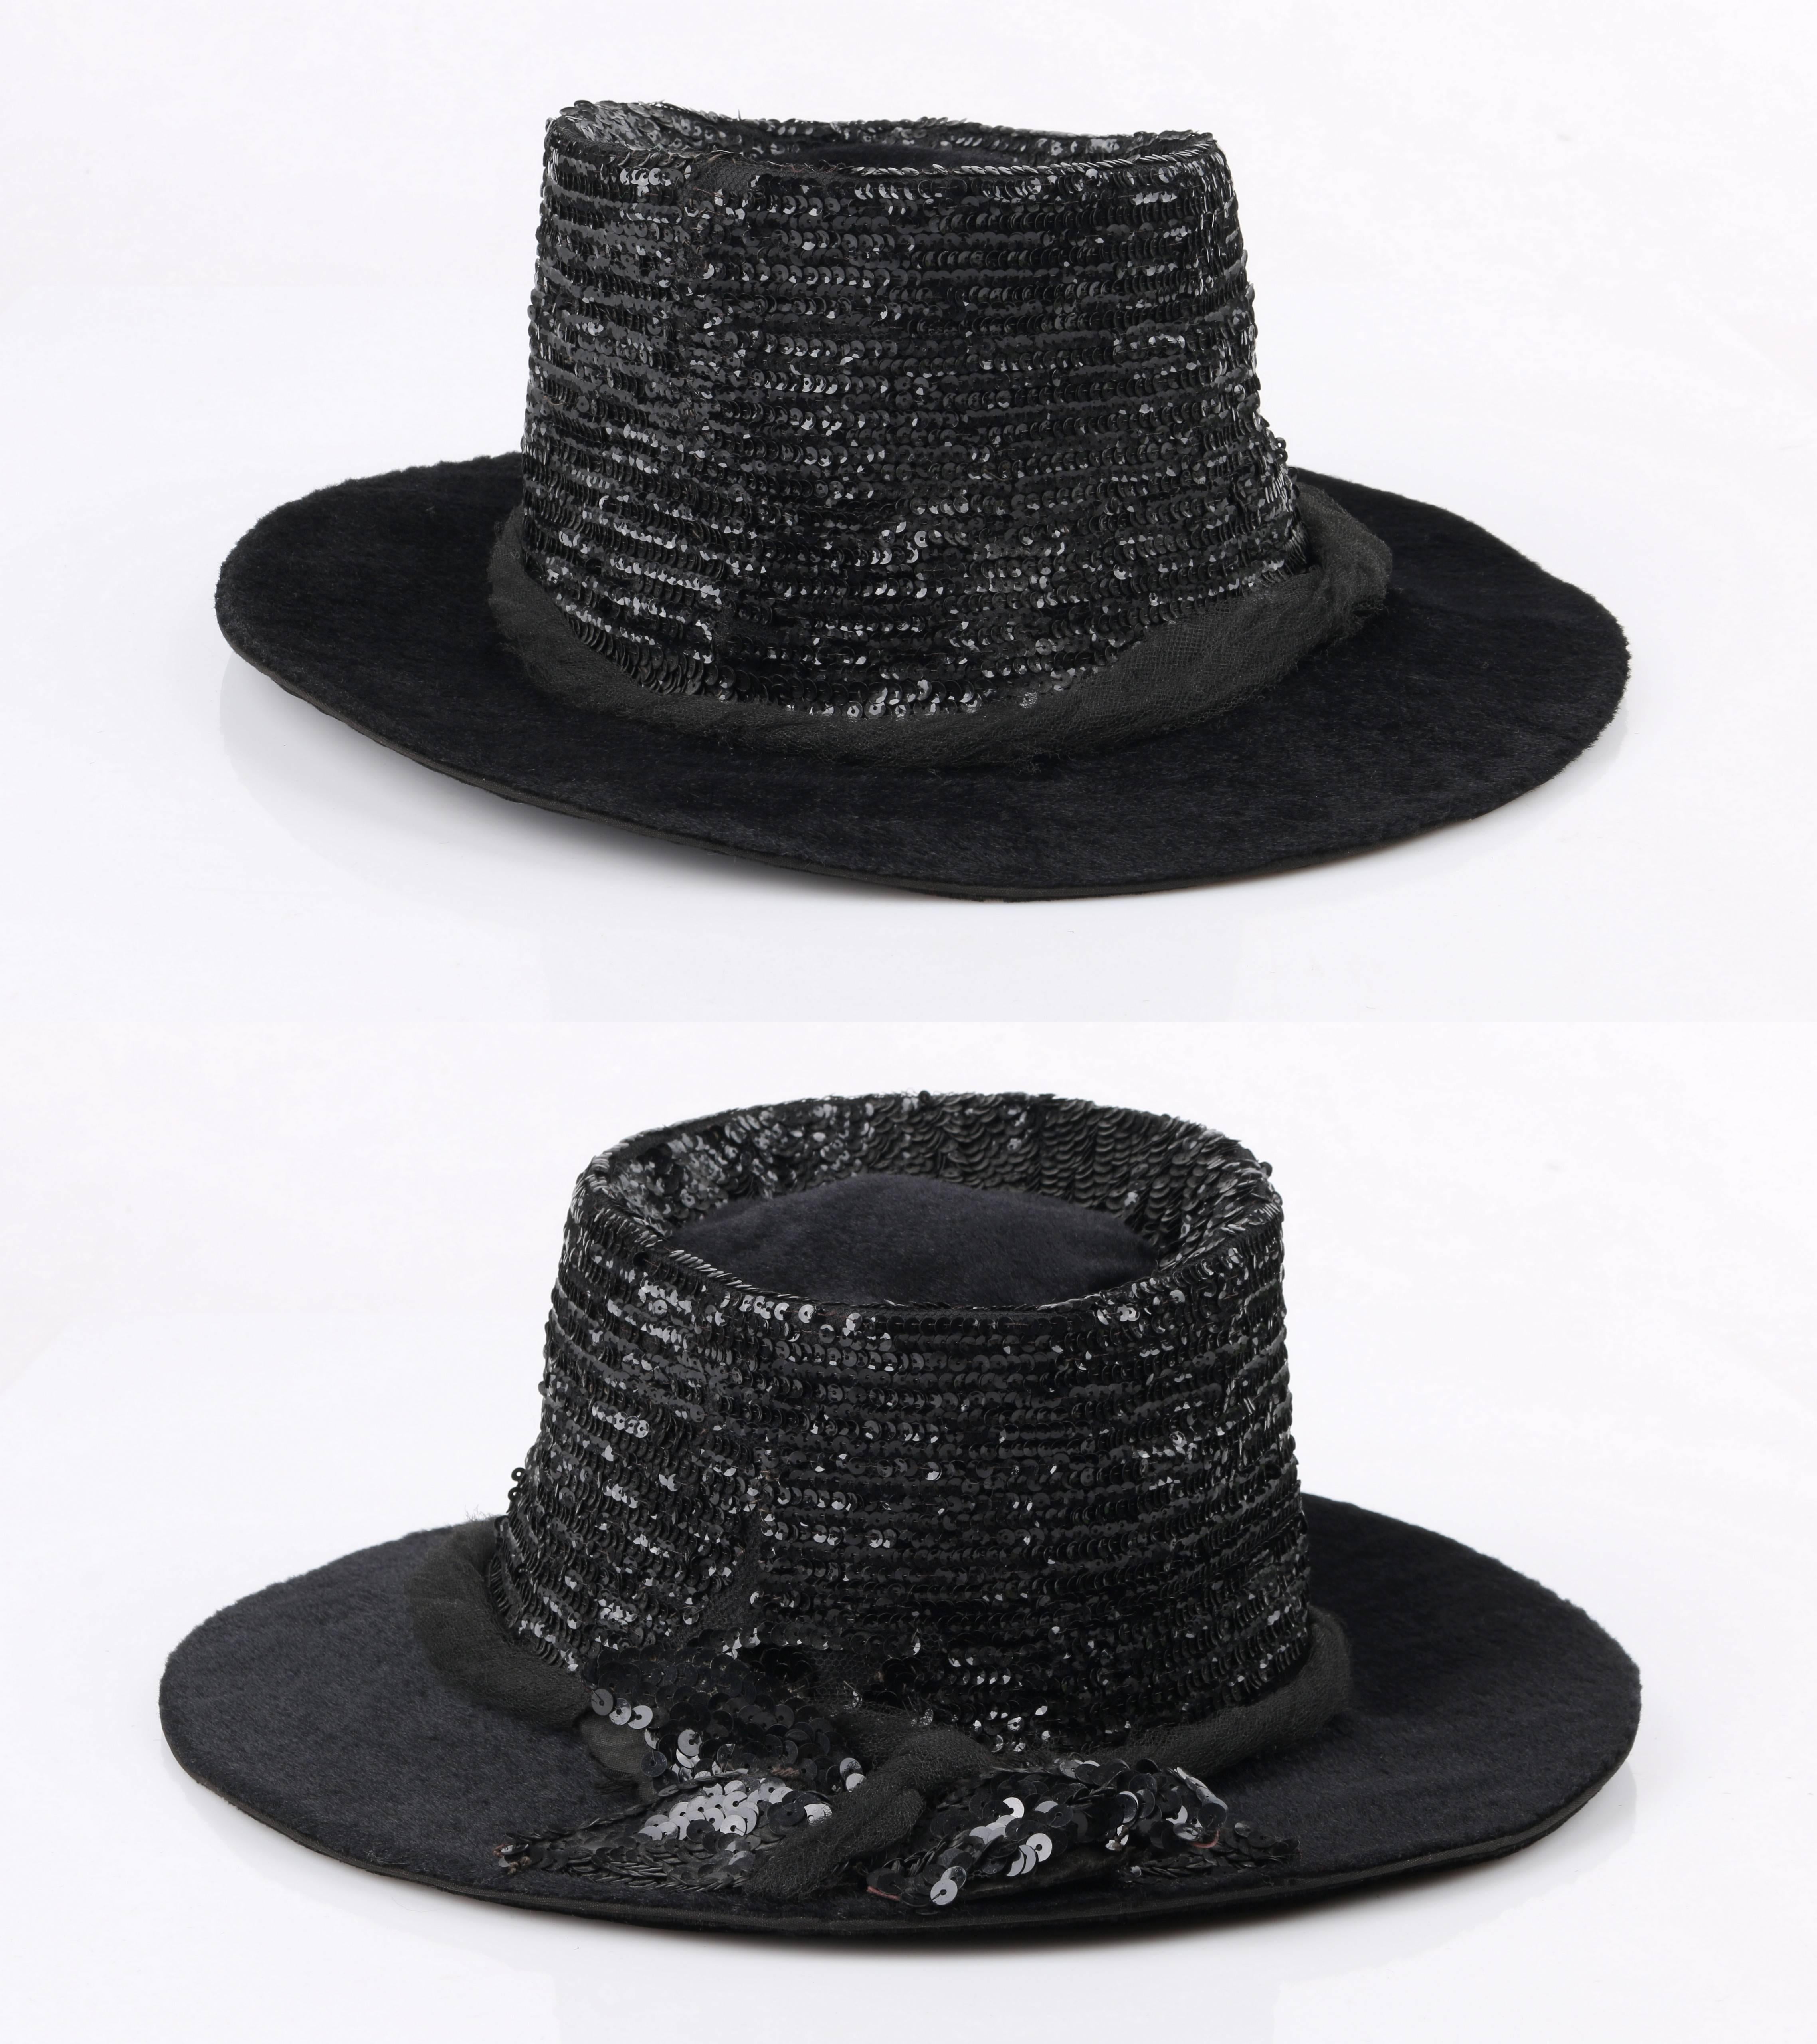 EDWARDIAN c.1900's Black Beaver Fur Felt Sequin Embellished Afternoon Hat 2